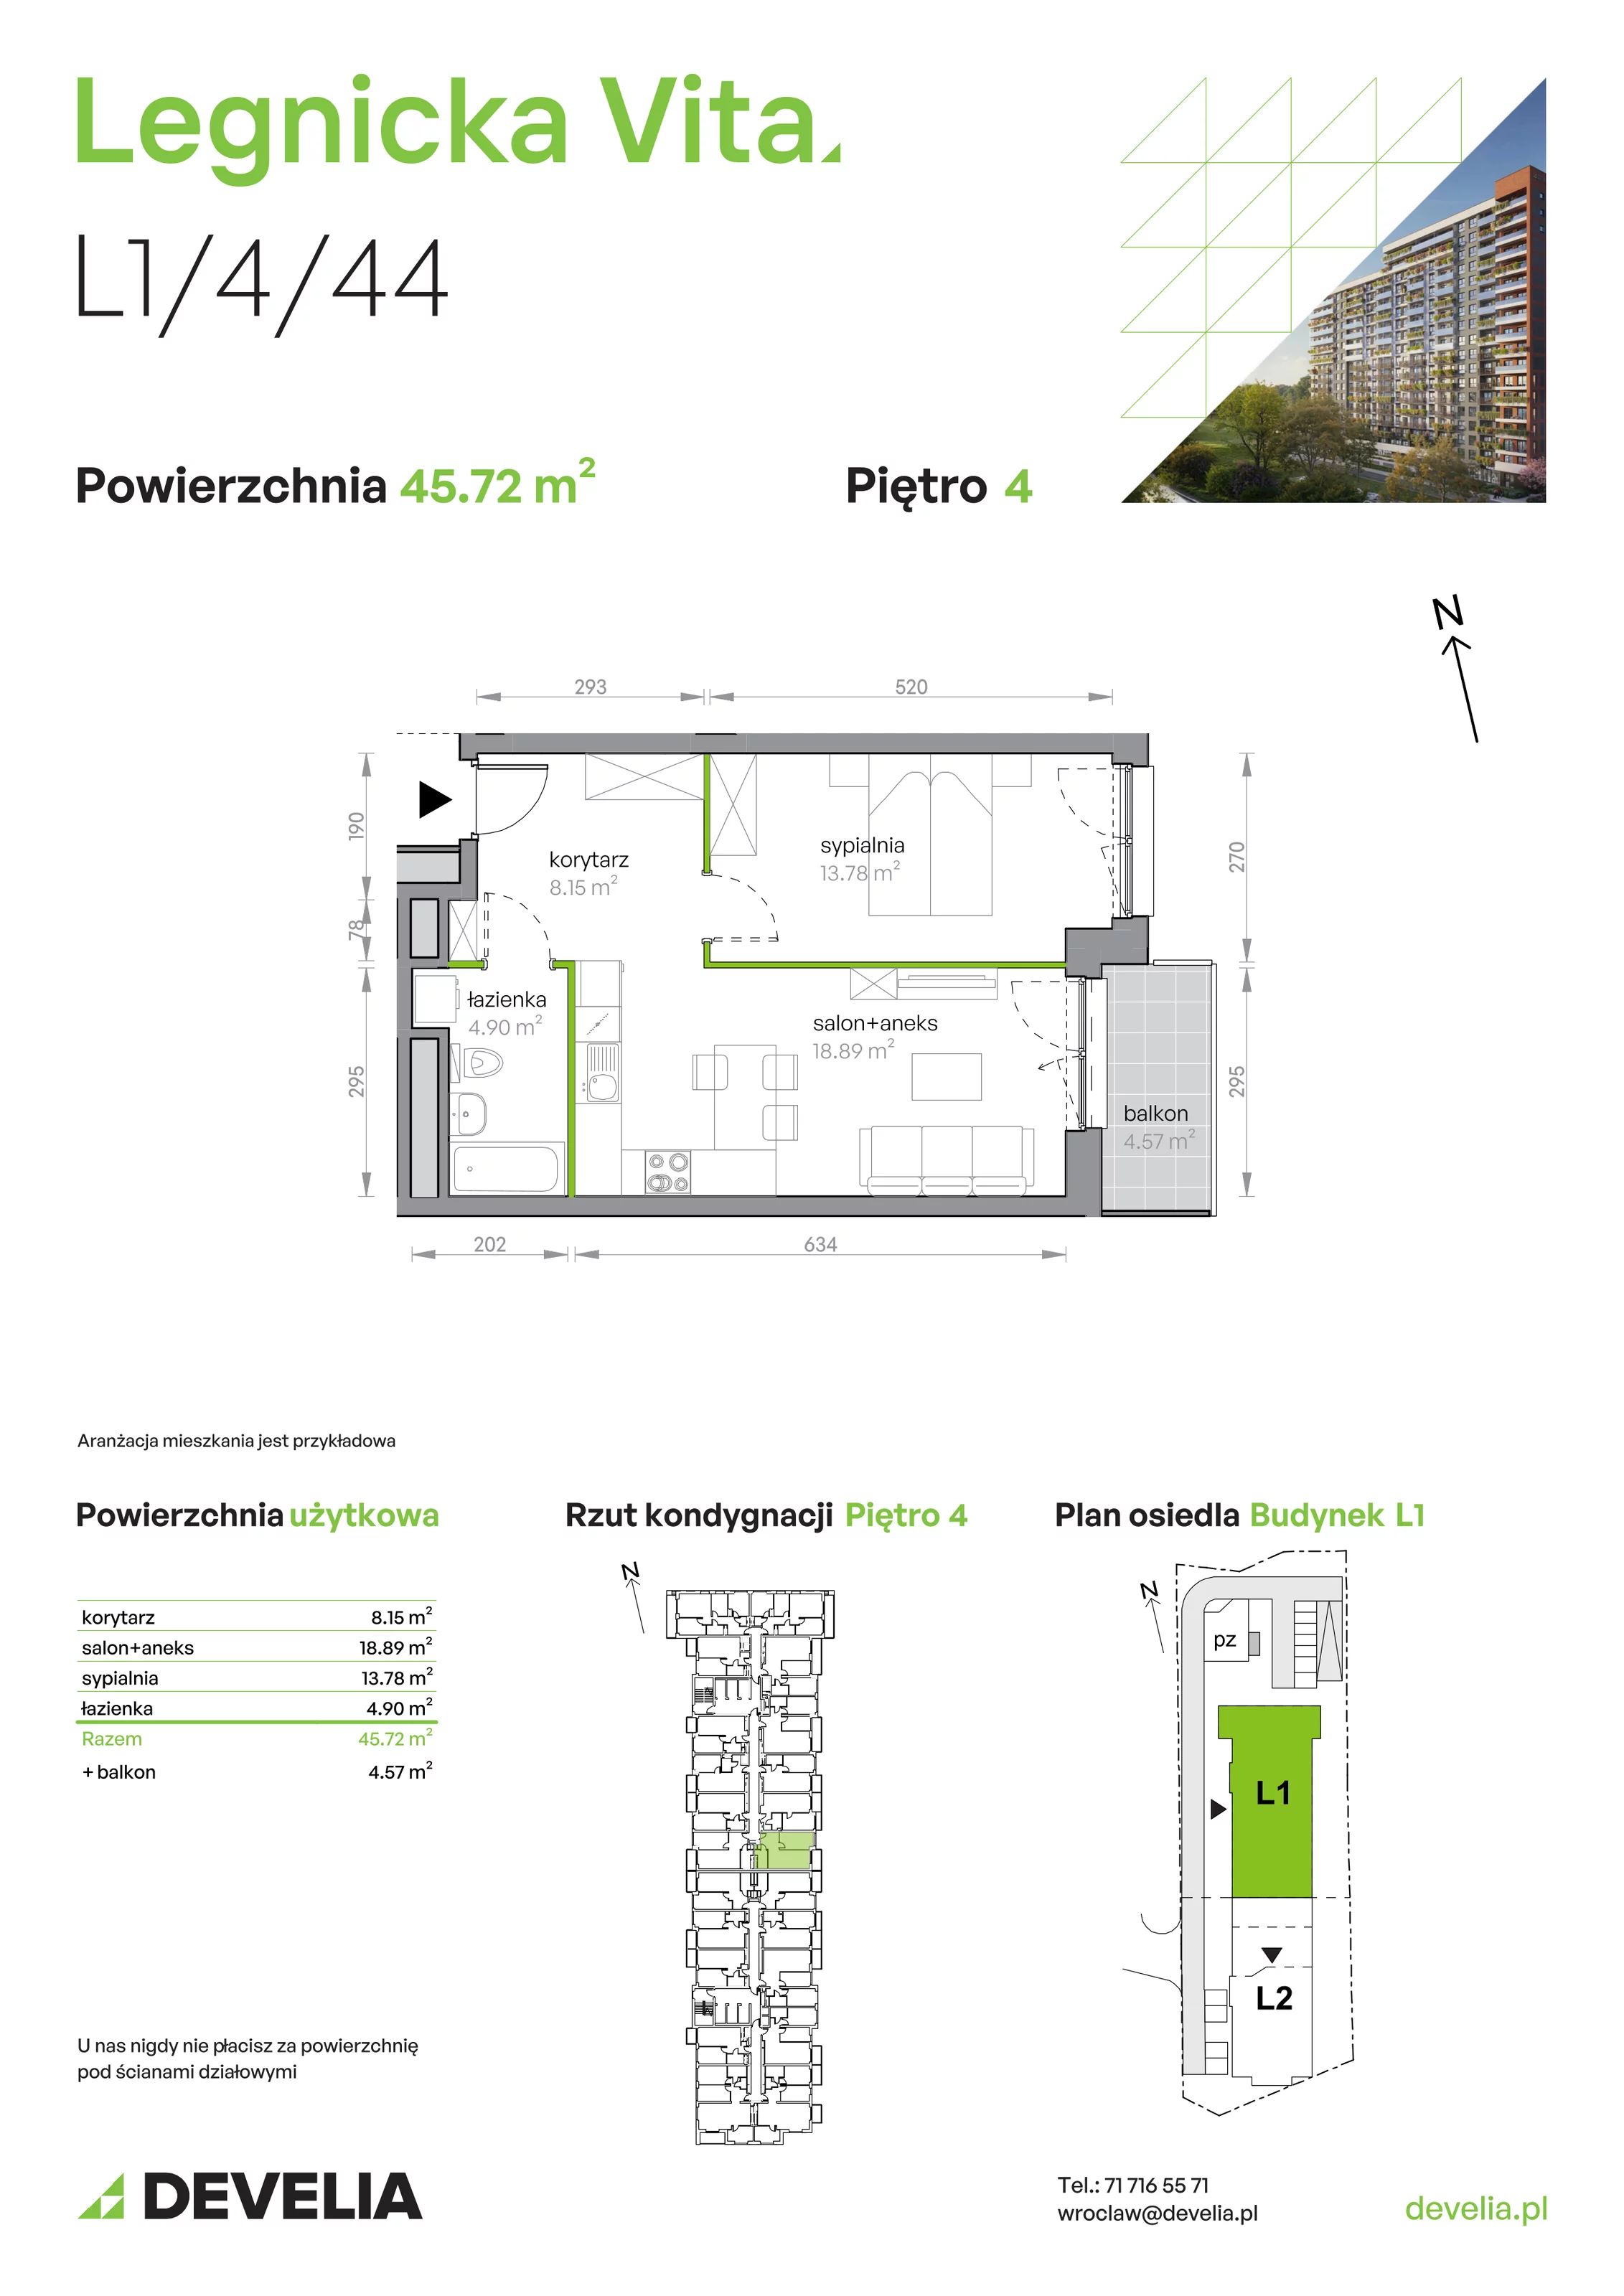 Mieszkanie 45,72 m², piętro 4, oferta nr L1/4/44, Legnicka Vita, Wrocław, Gądów-Popowice Południowe, Popowice, ul. Legnicka 52 A